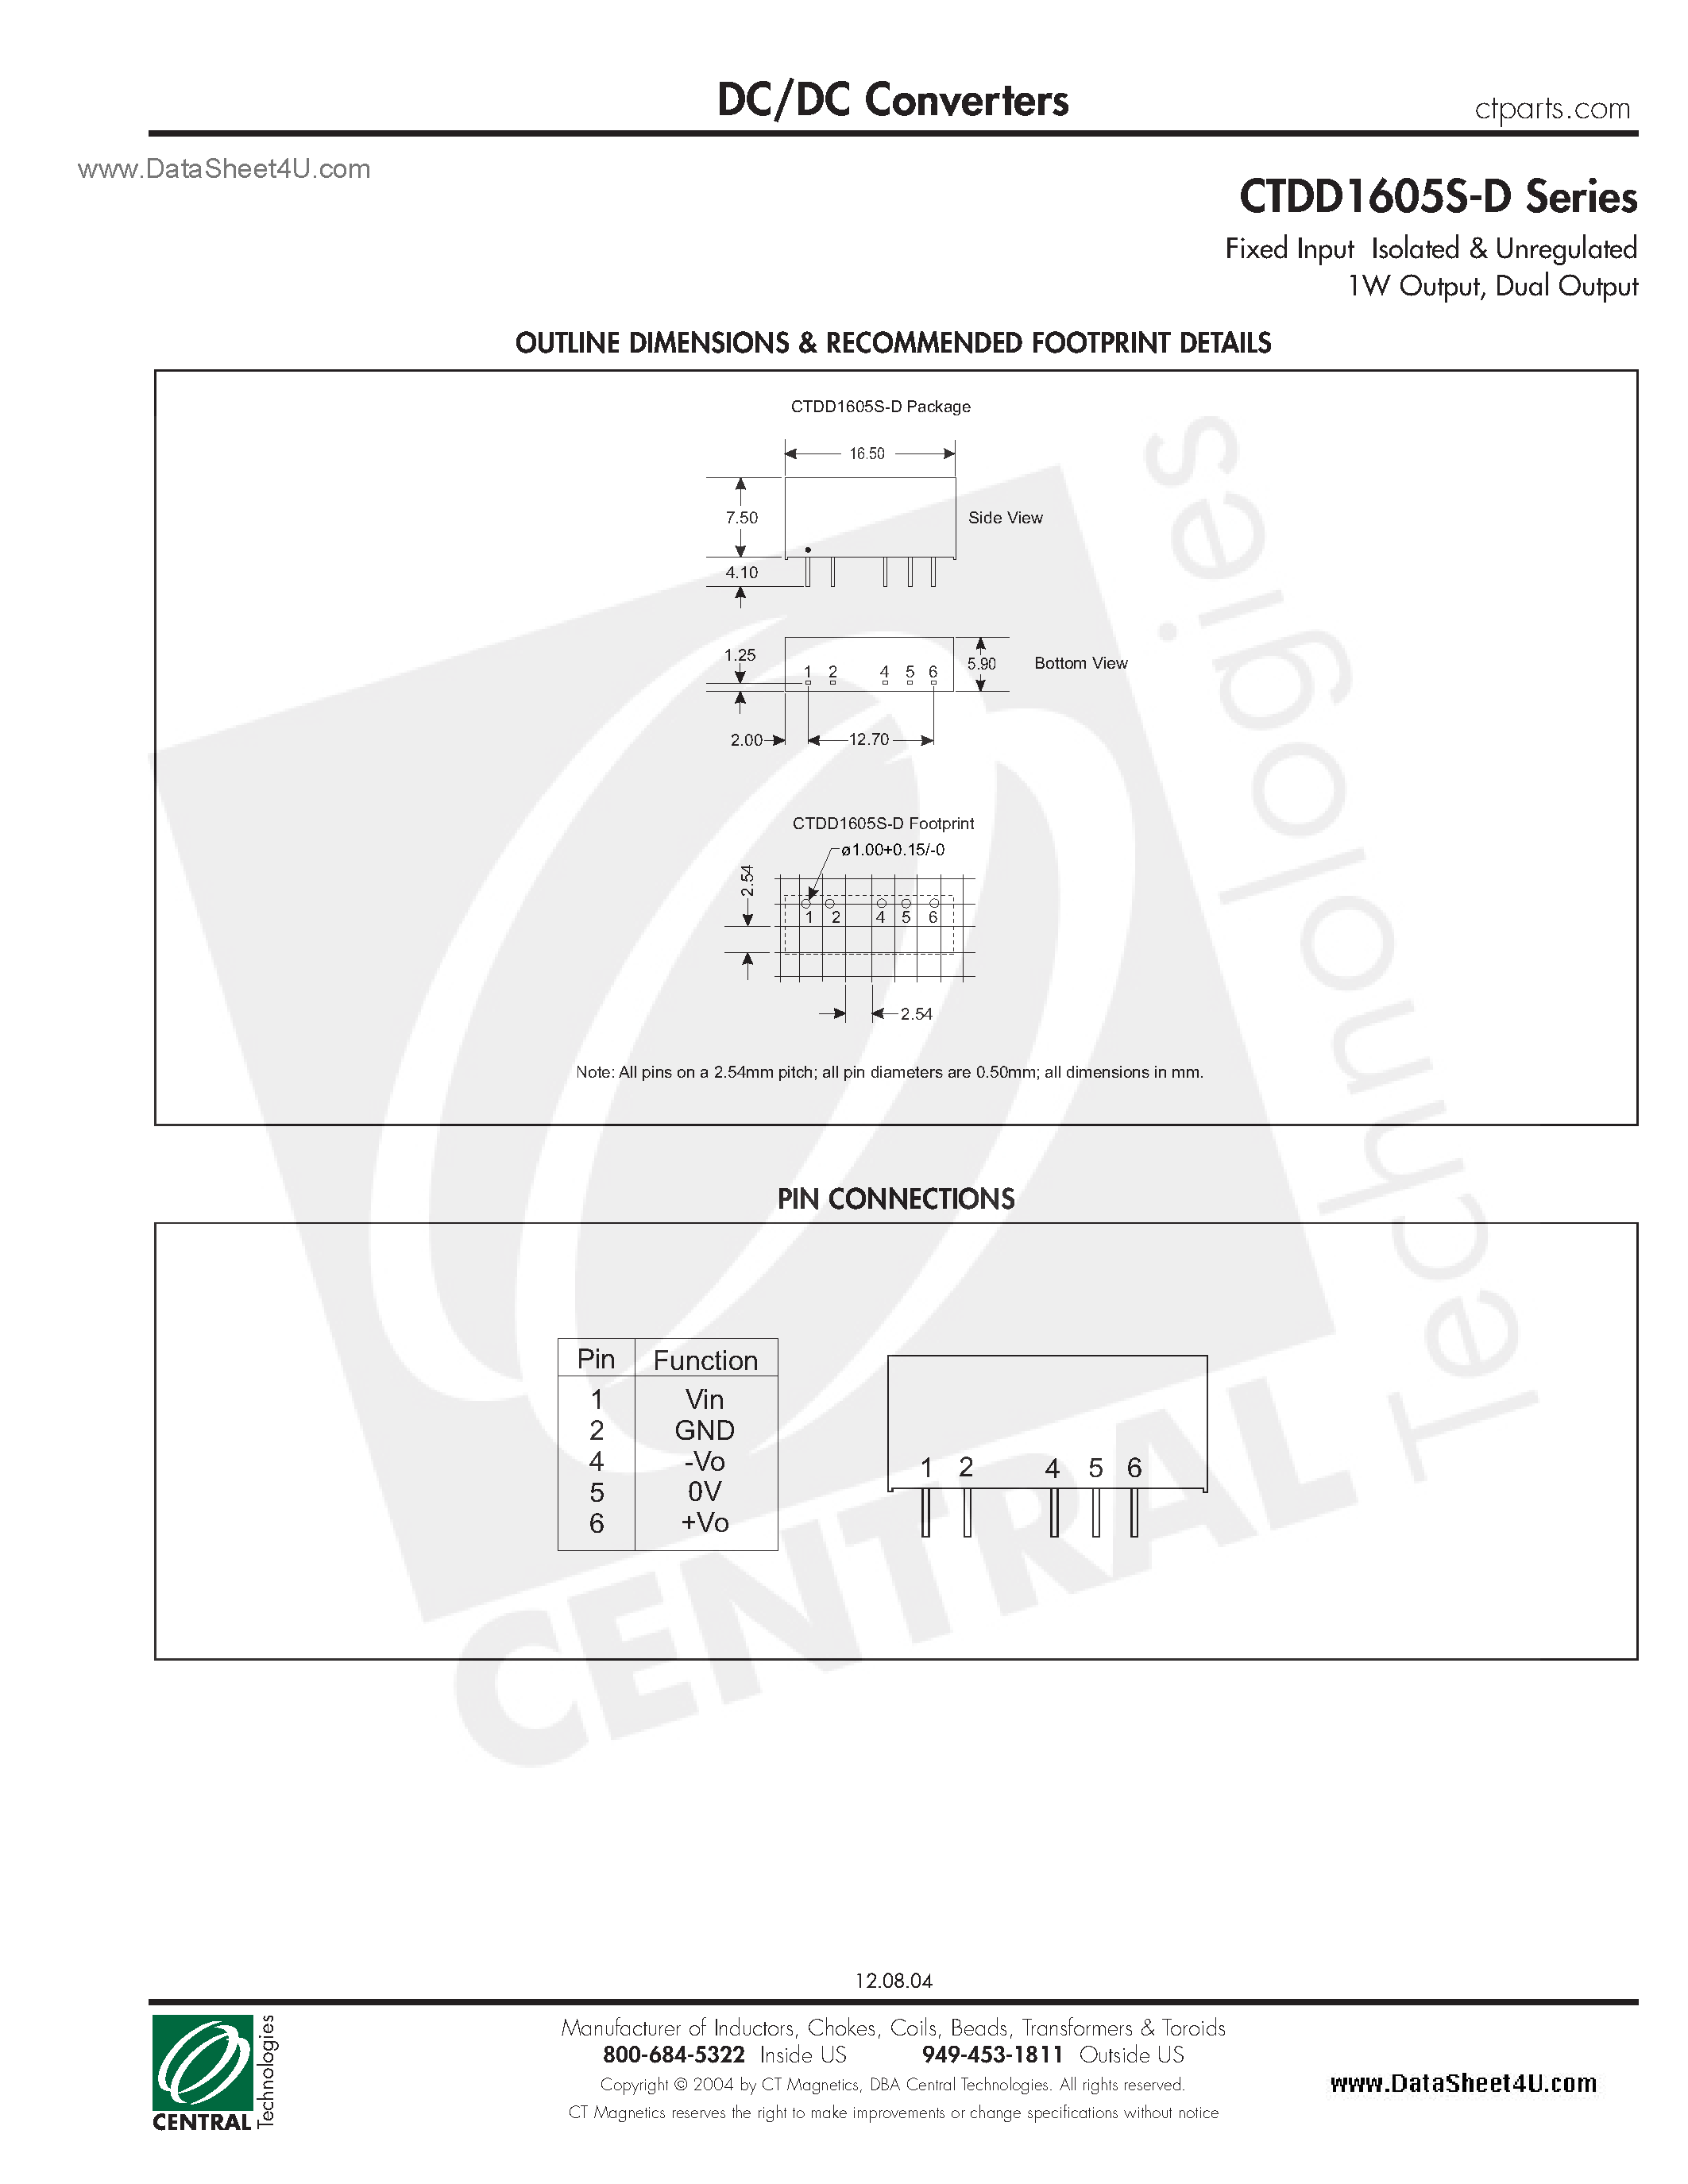 Даташит CTDD1605S-D - DC/DC Converters страница 2